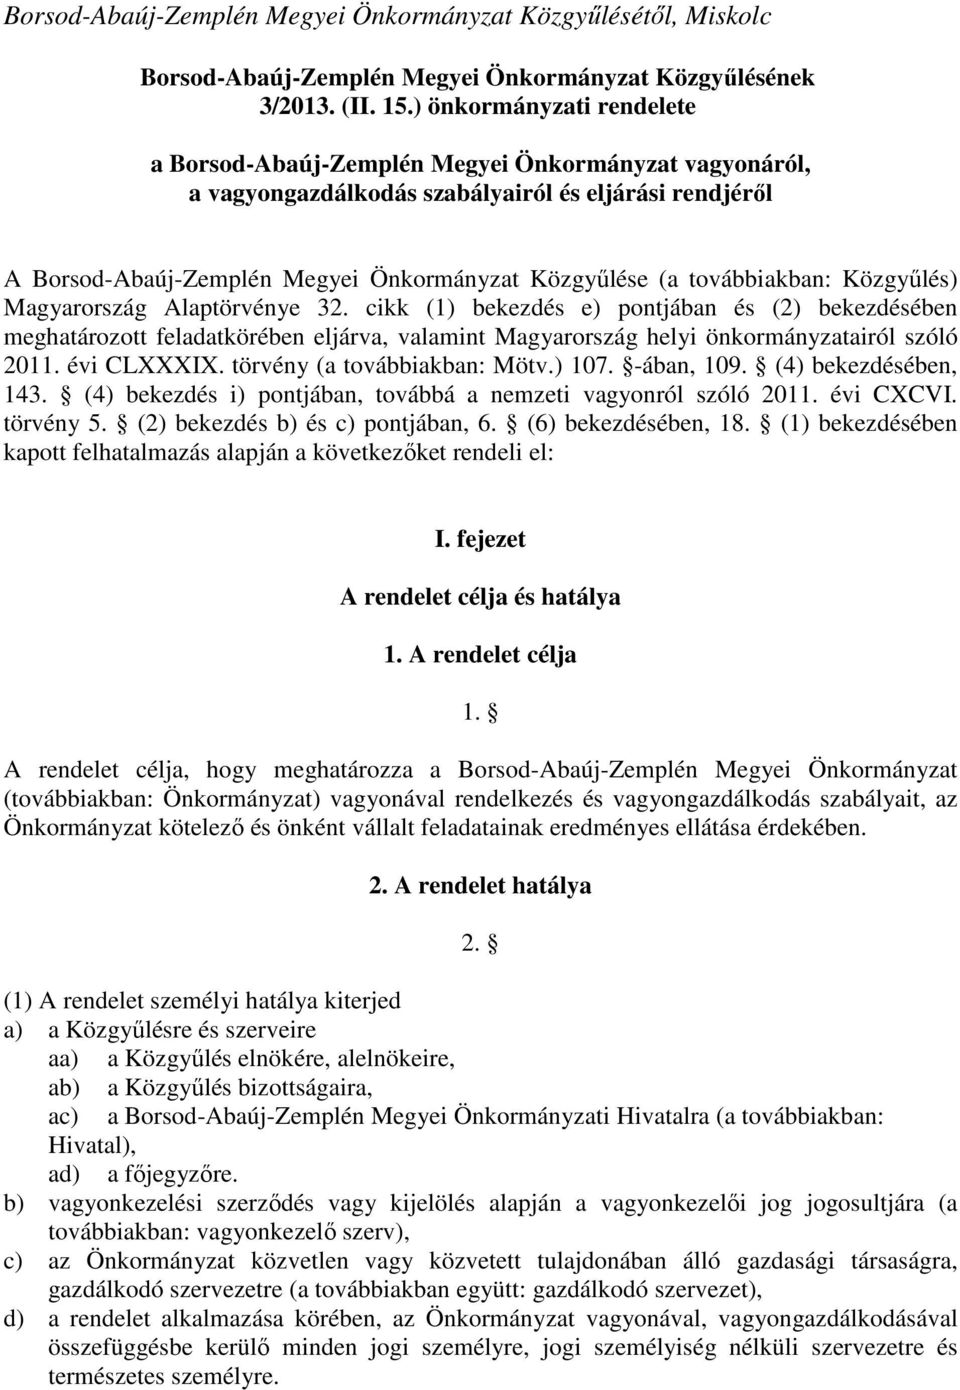 továbbiakban: Közgyűlés) Magyarország Alaptörvénye 32.